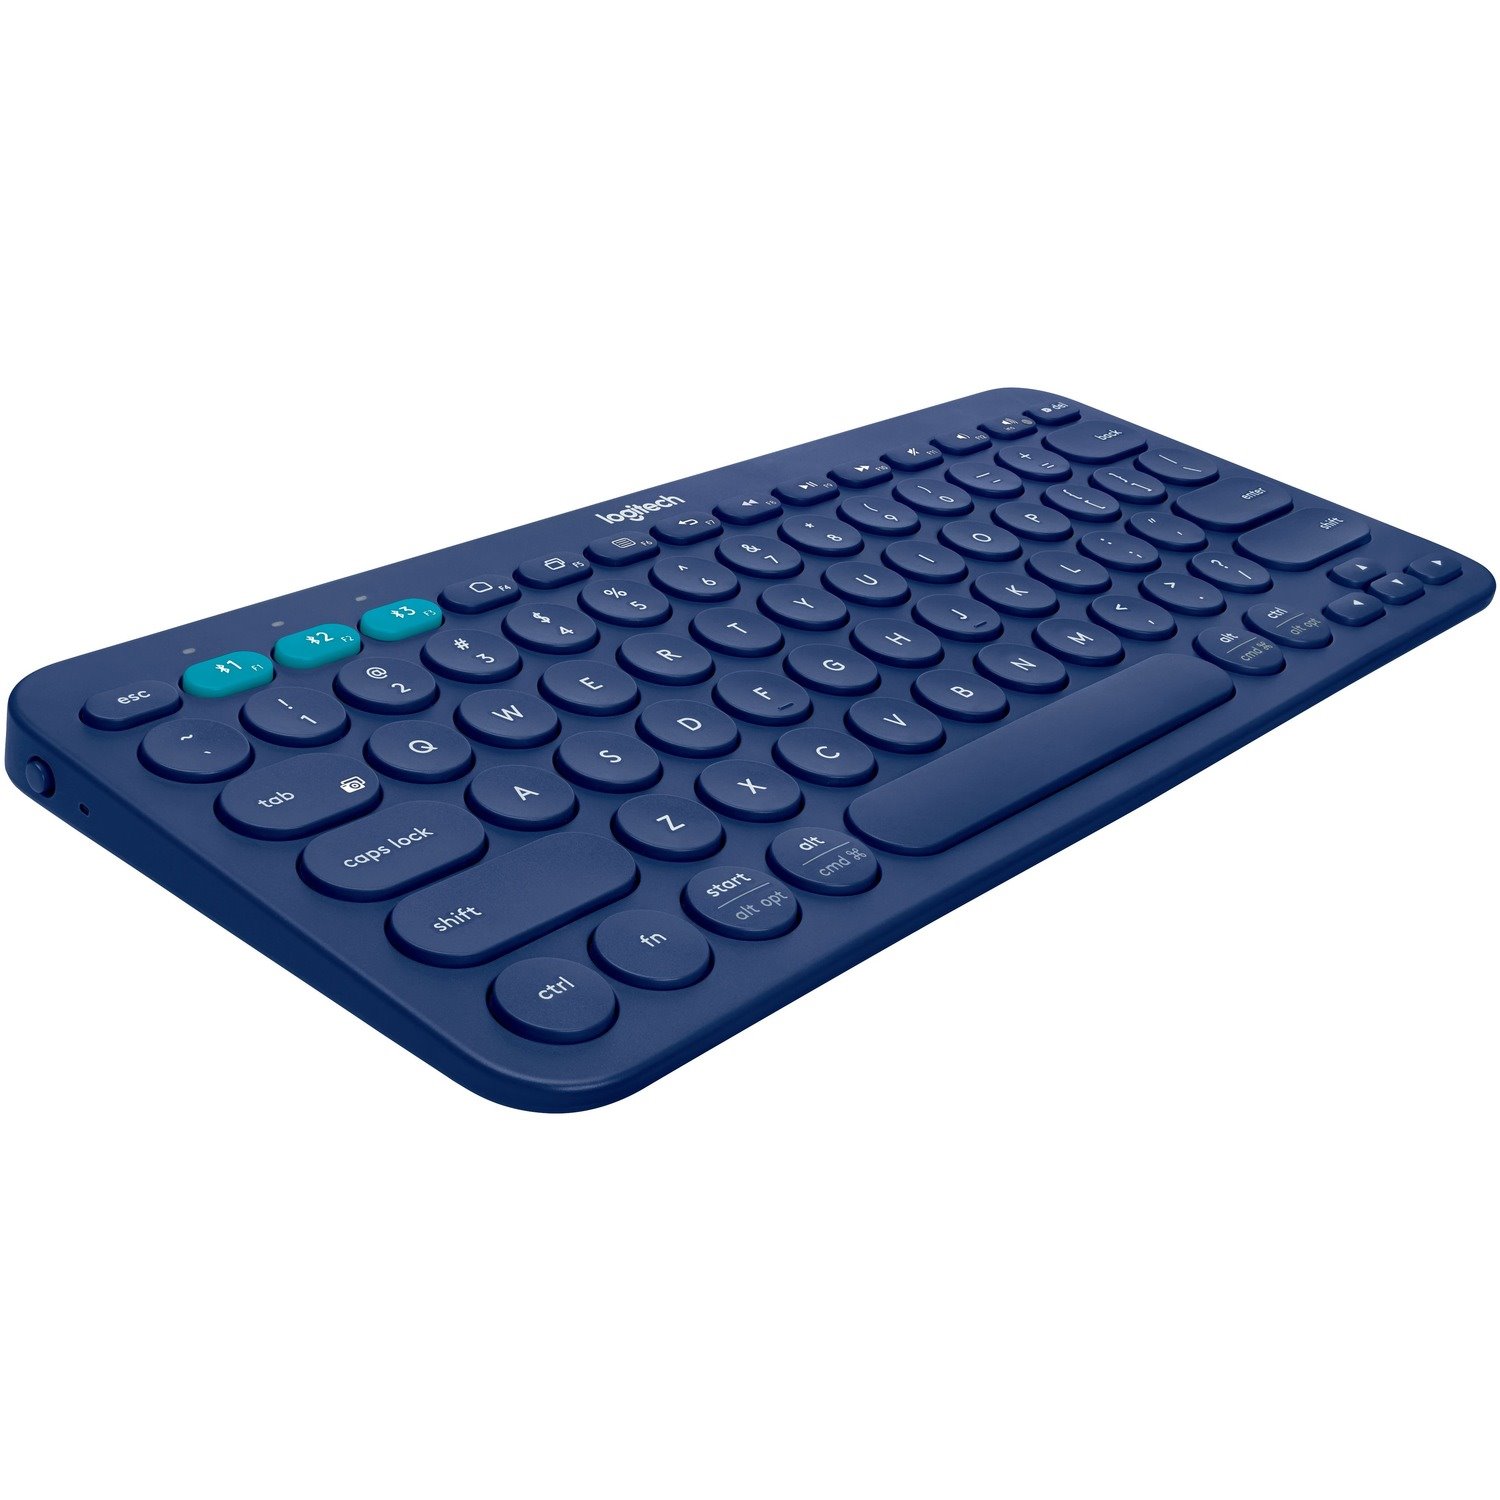 Logitech K380 Keyboard - Wireless Connectivity - QWERTY Layout - Blue